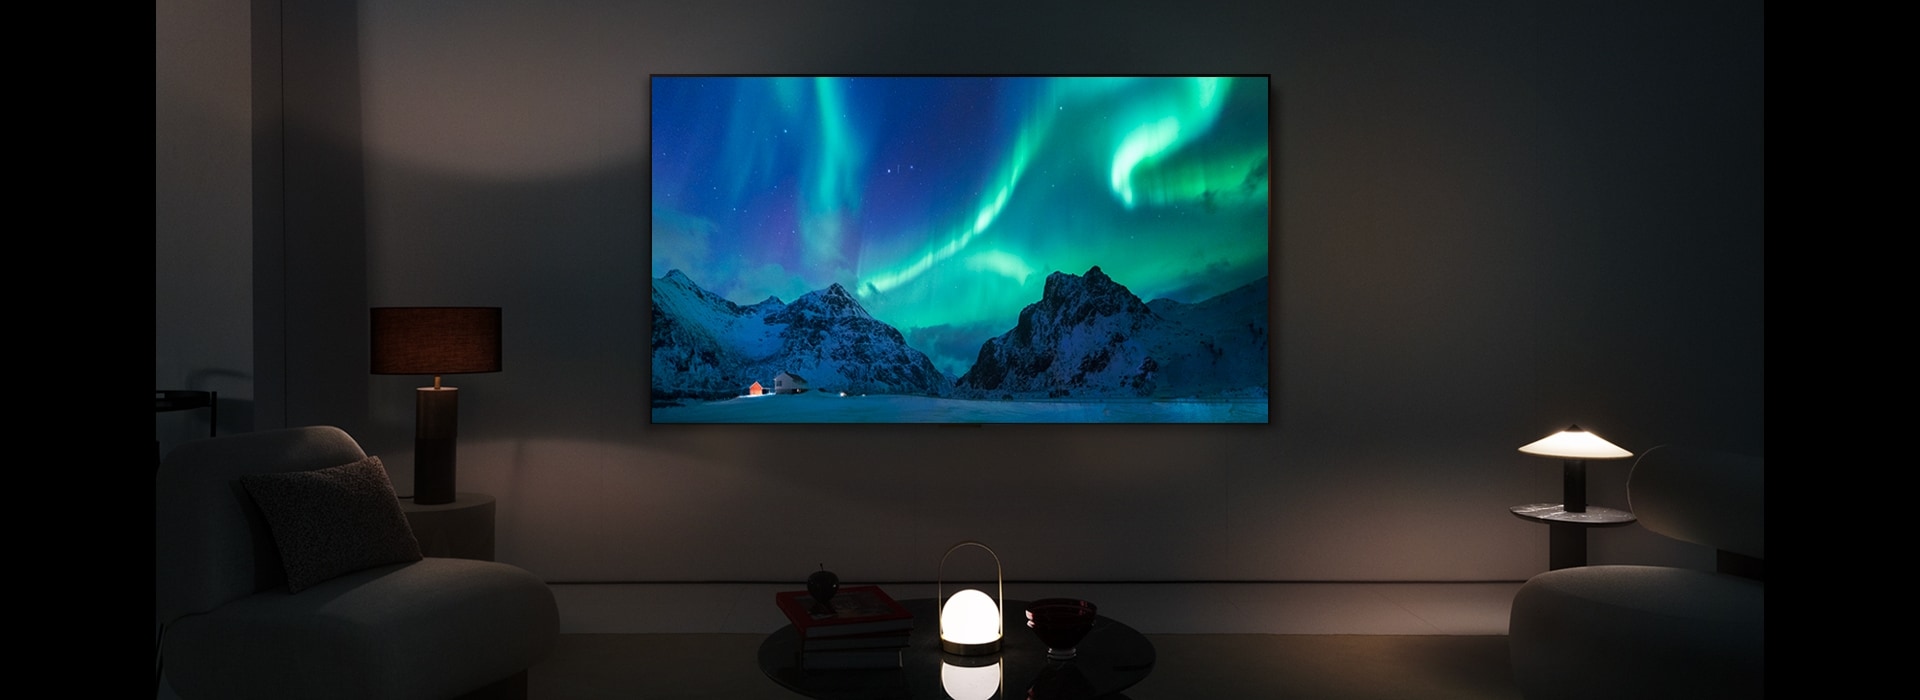 Una imagen de un televisor LG OLED y una barra de sonido LG en un espacio moderno durante la noche. La imagen de la aurora boreal se muestra con los niveles de brillo ideales.